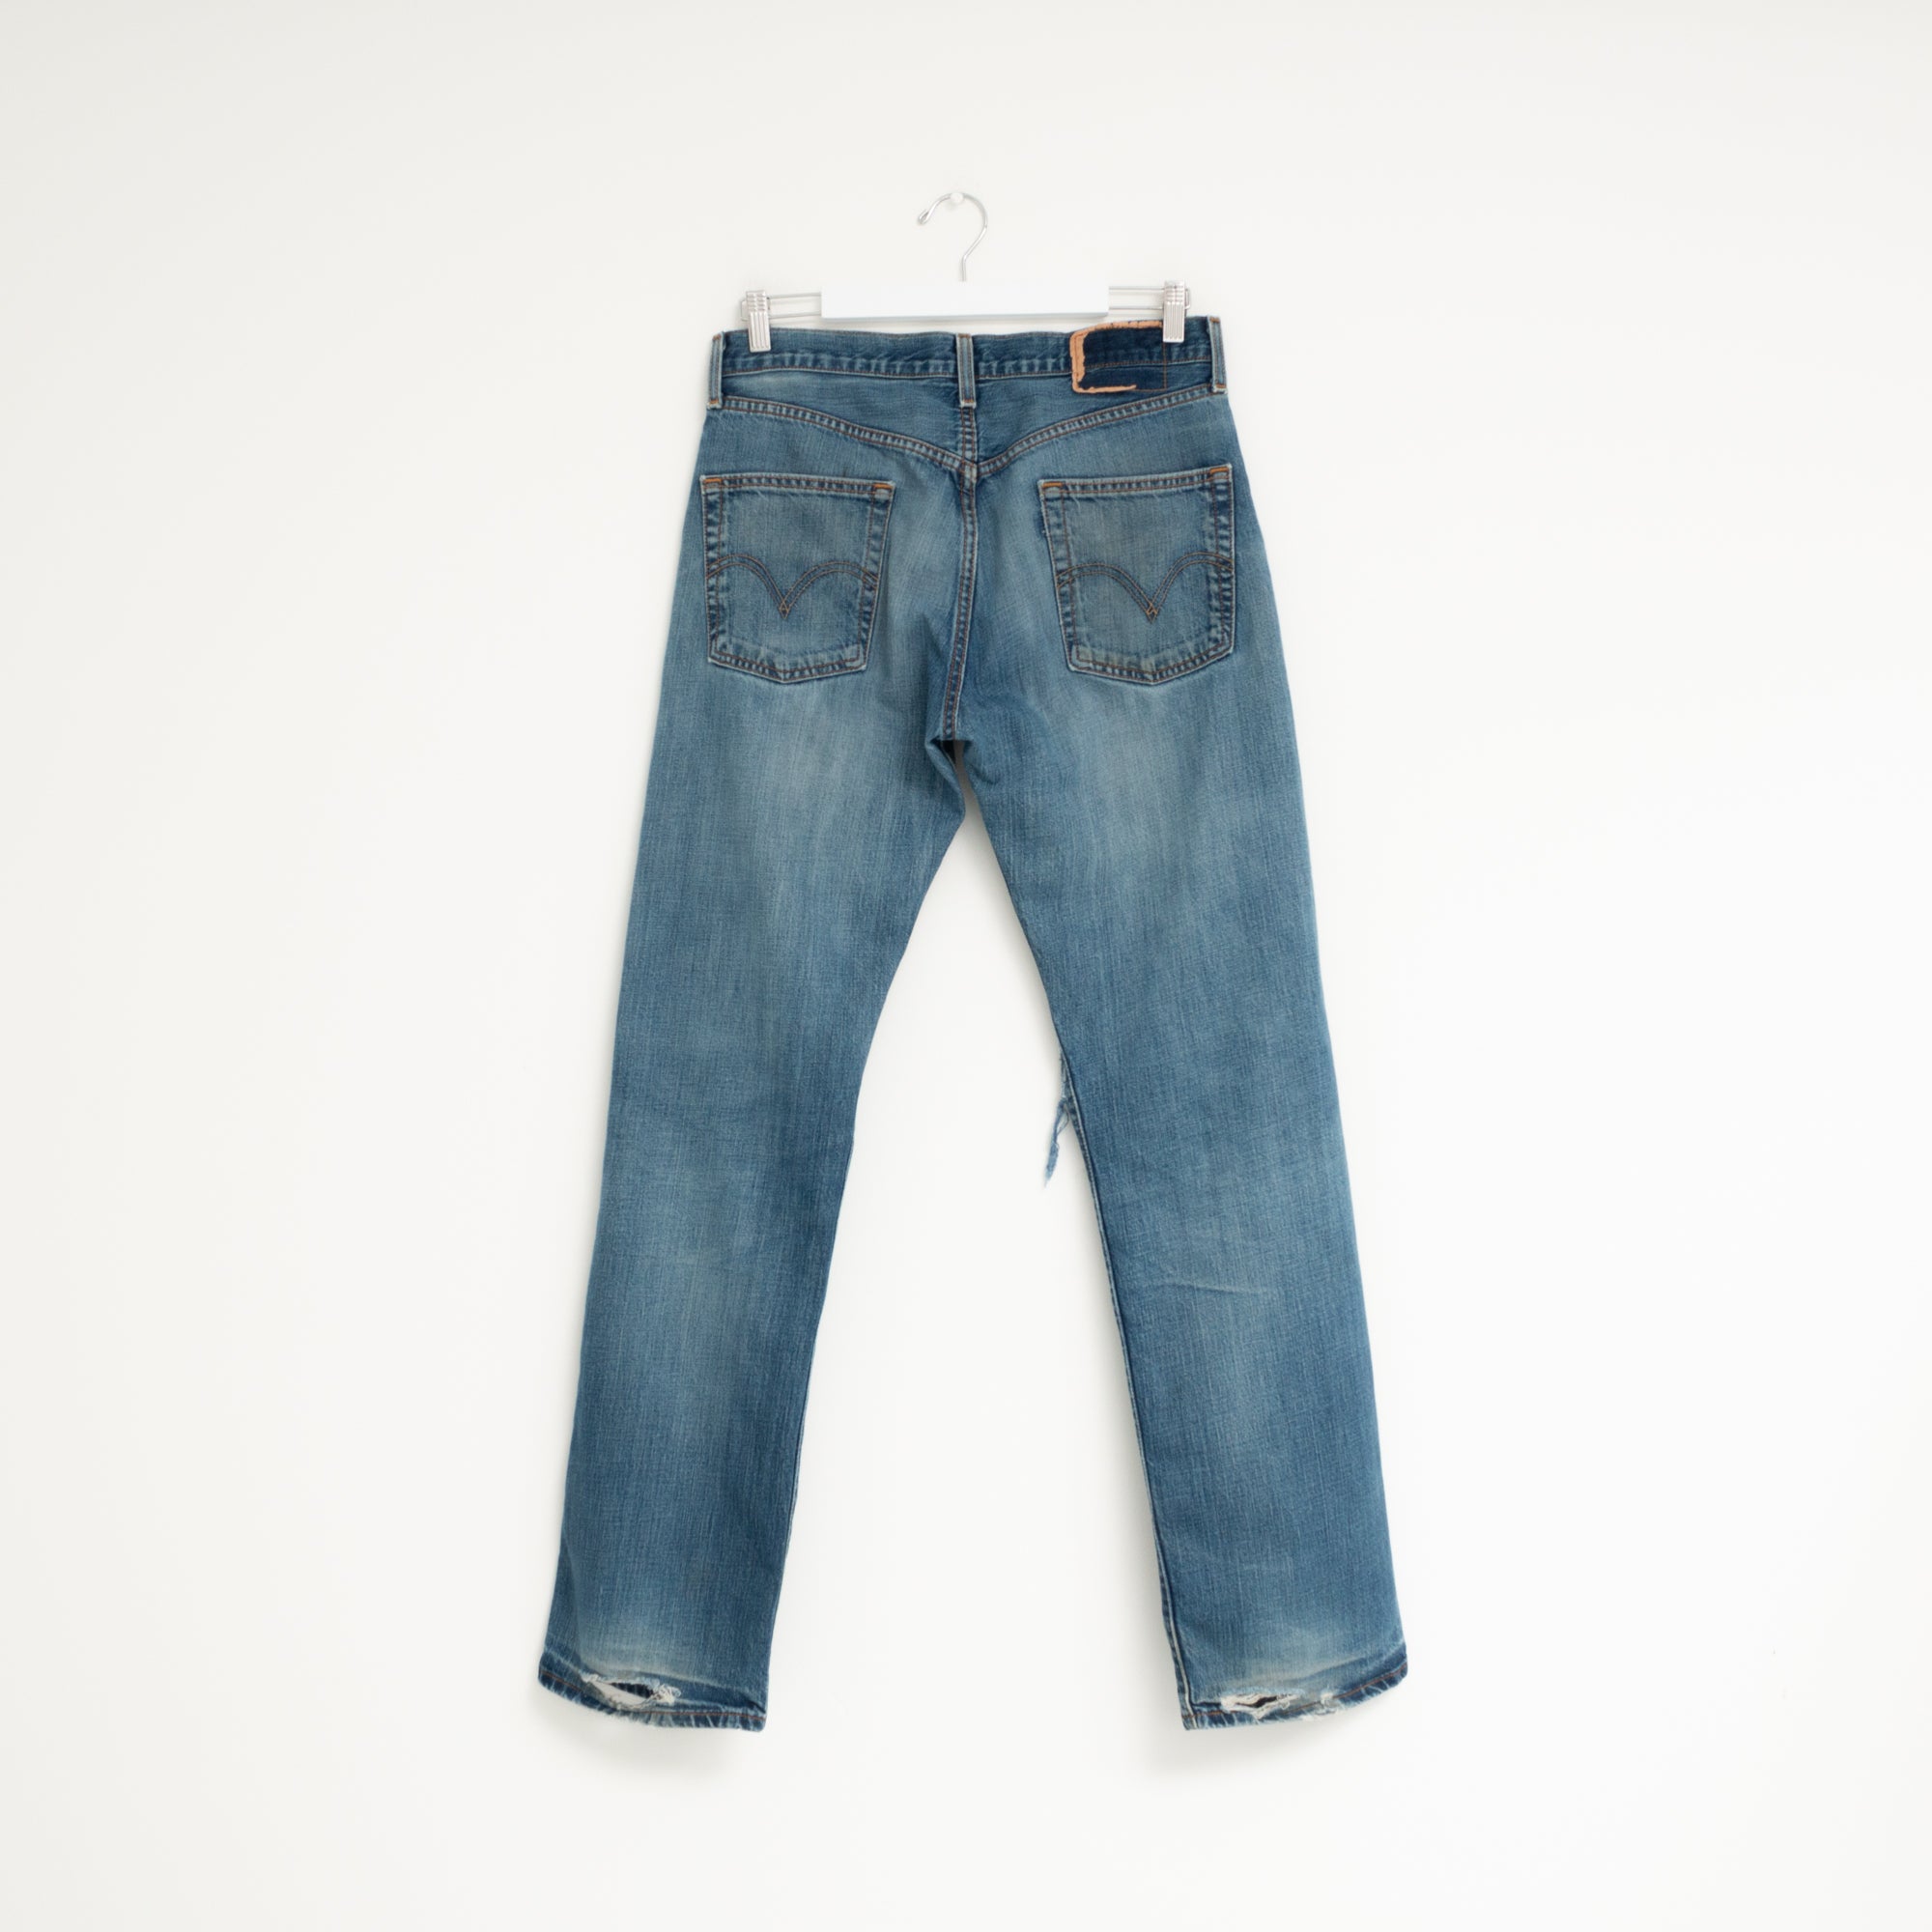 "DISTRESSED" Jeans W33 L34